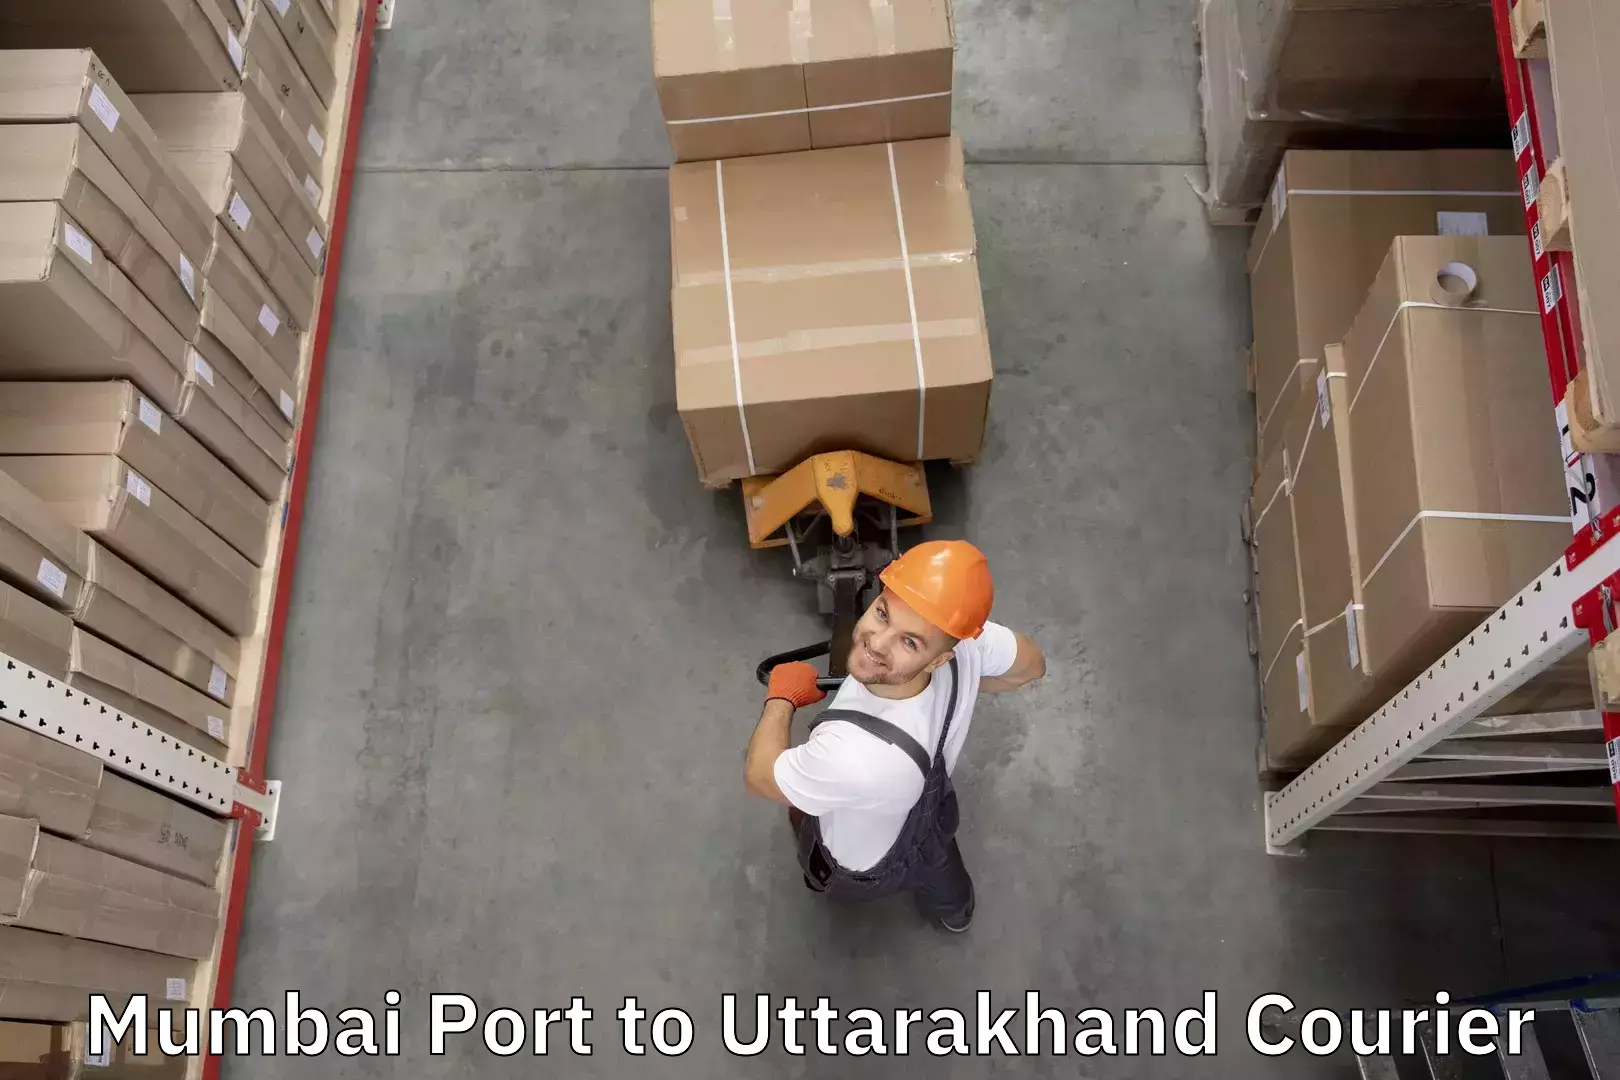 Luggage shipment tracking Mumbai Port to Gopeshwar